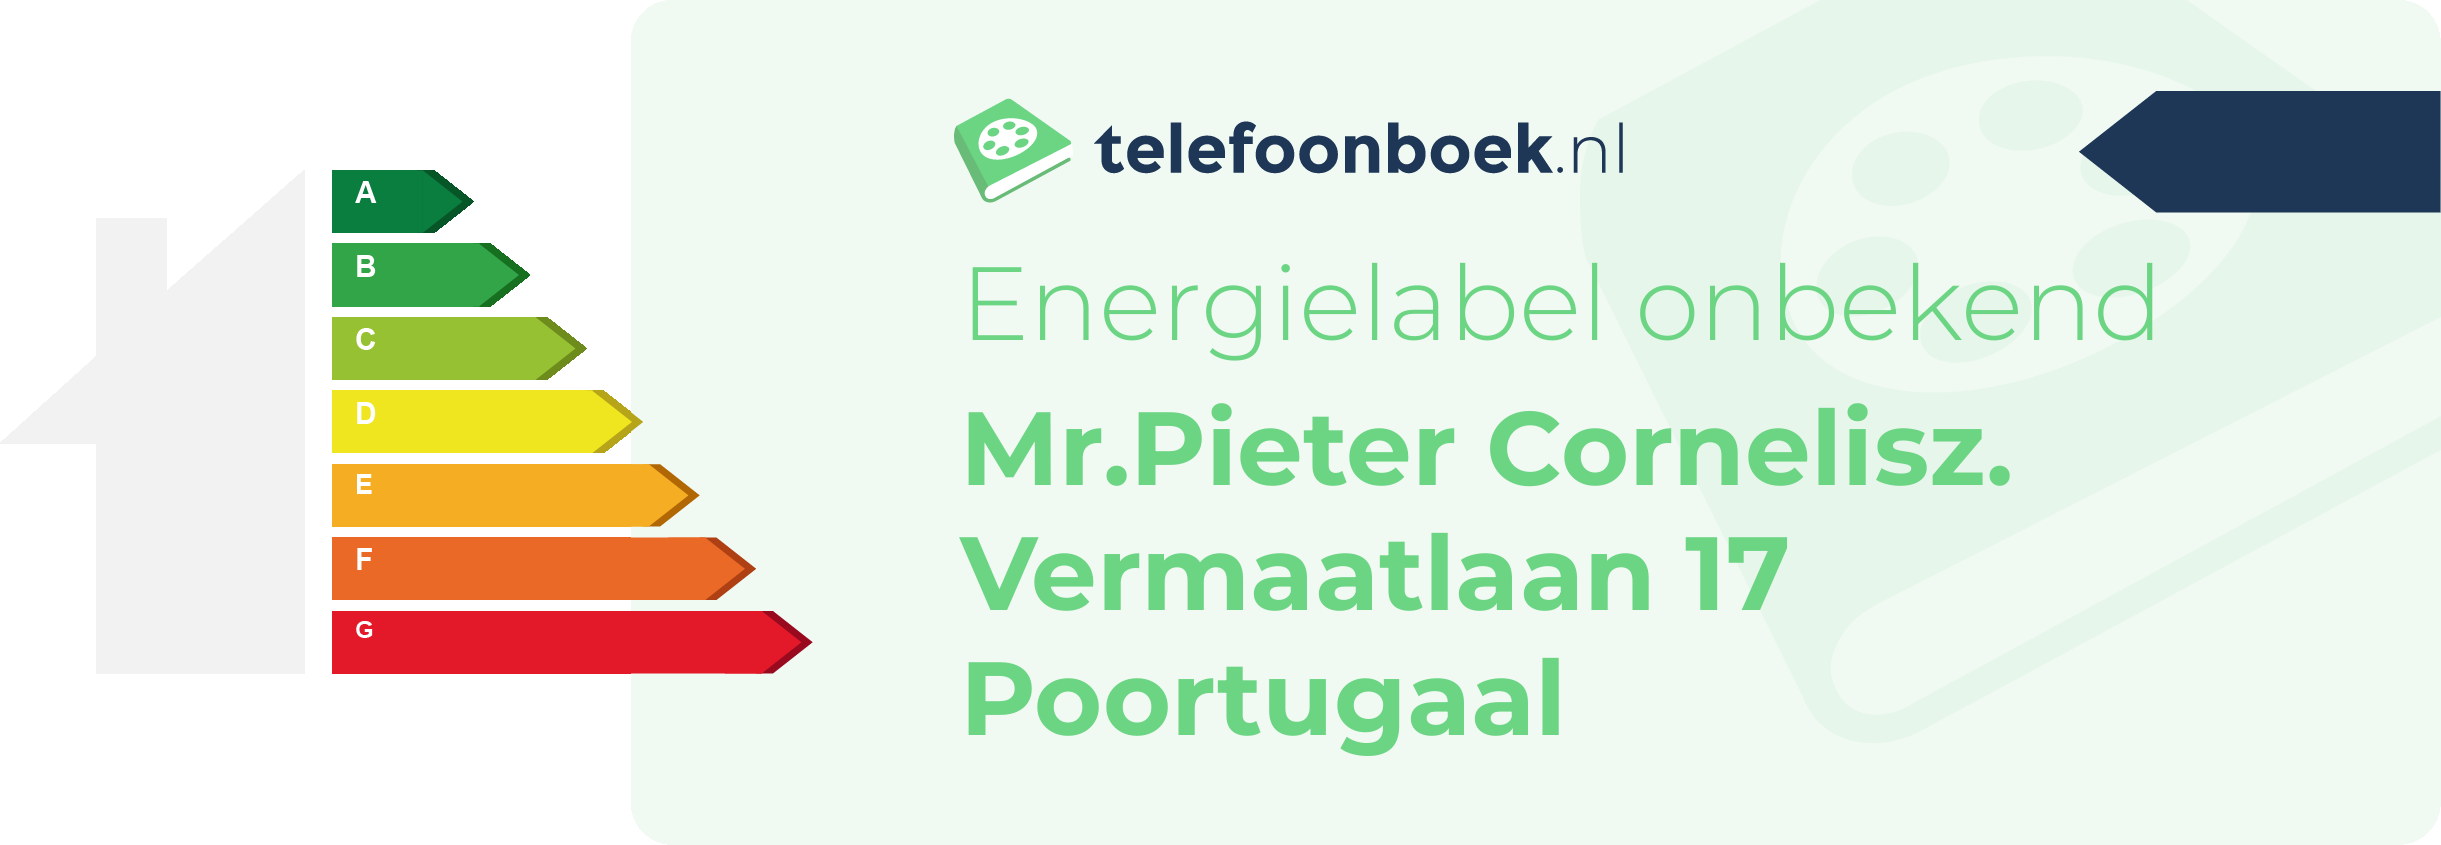 Energielabel Mr.Pieter Cornelisz. Vermaatlaan 17 Poortugaal